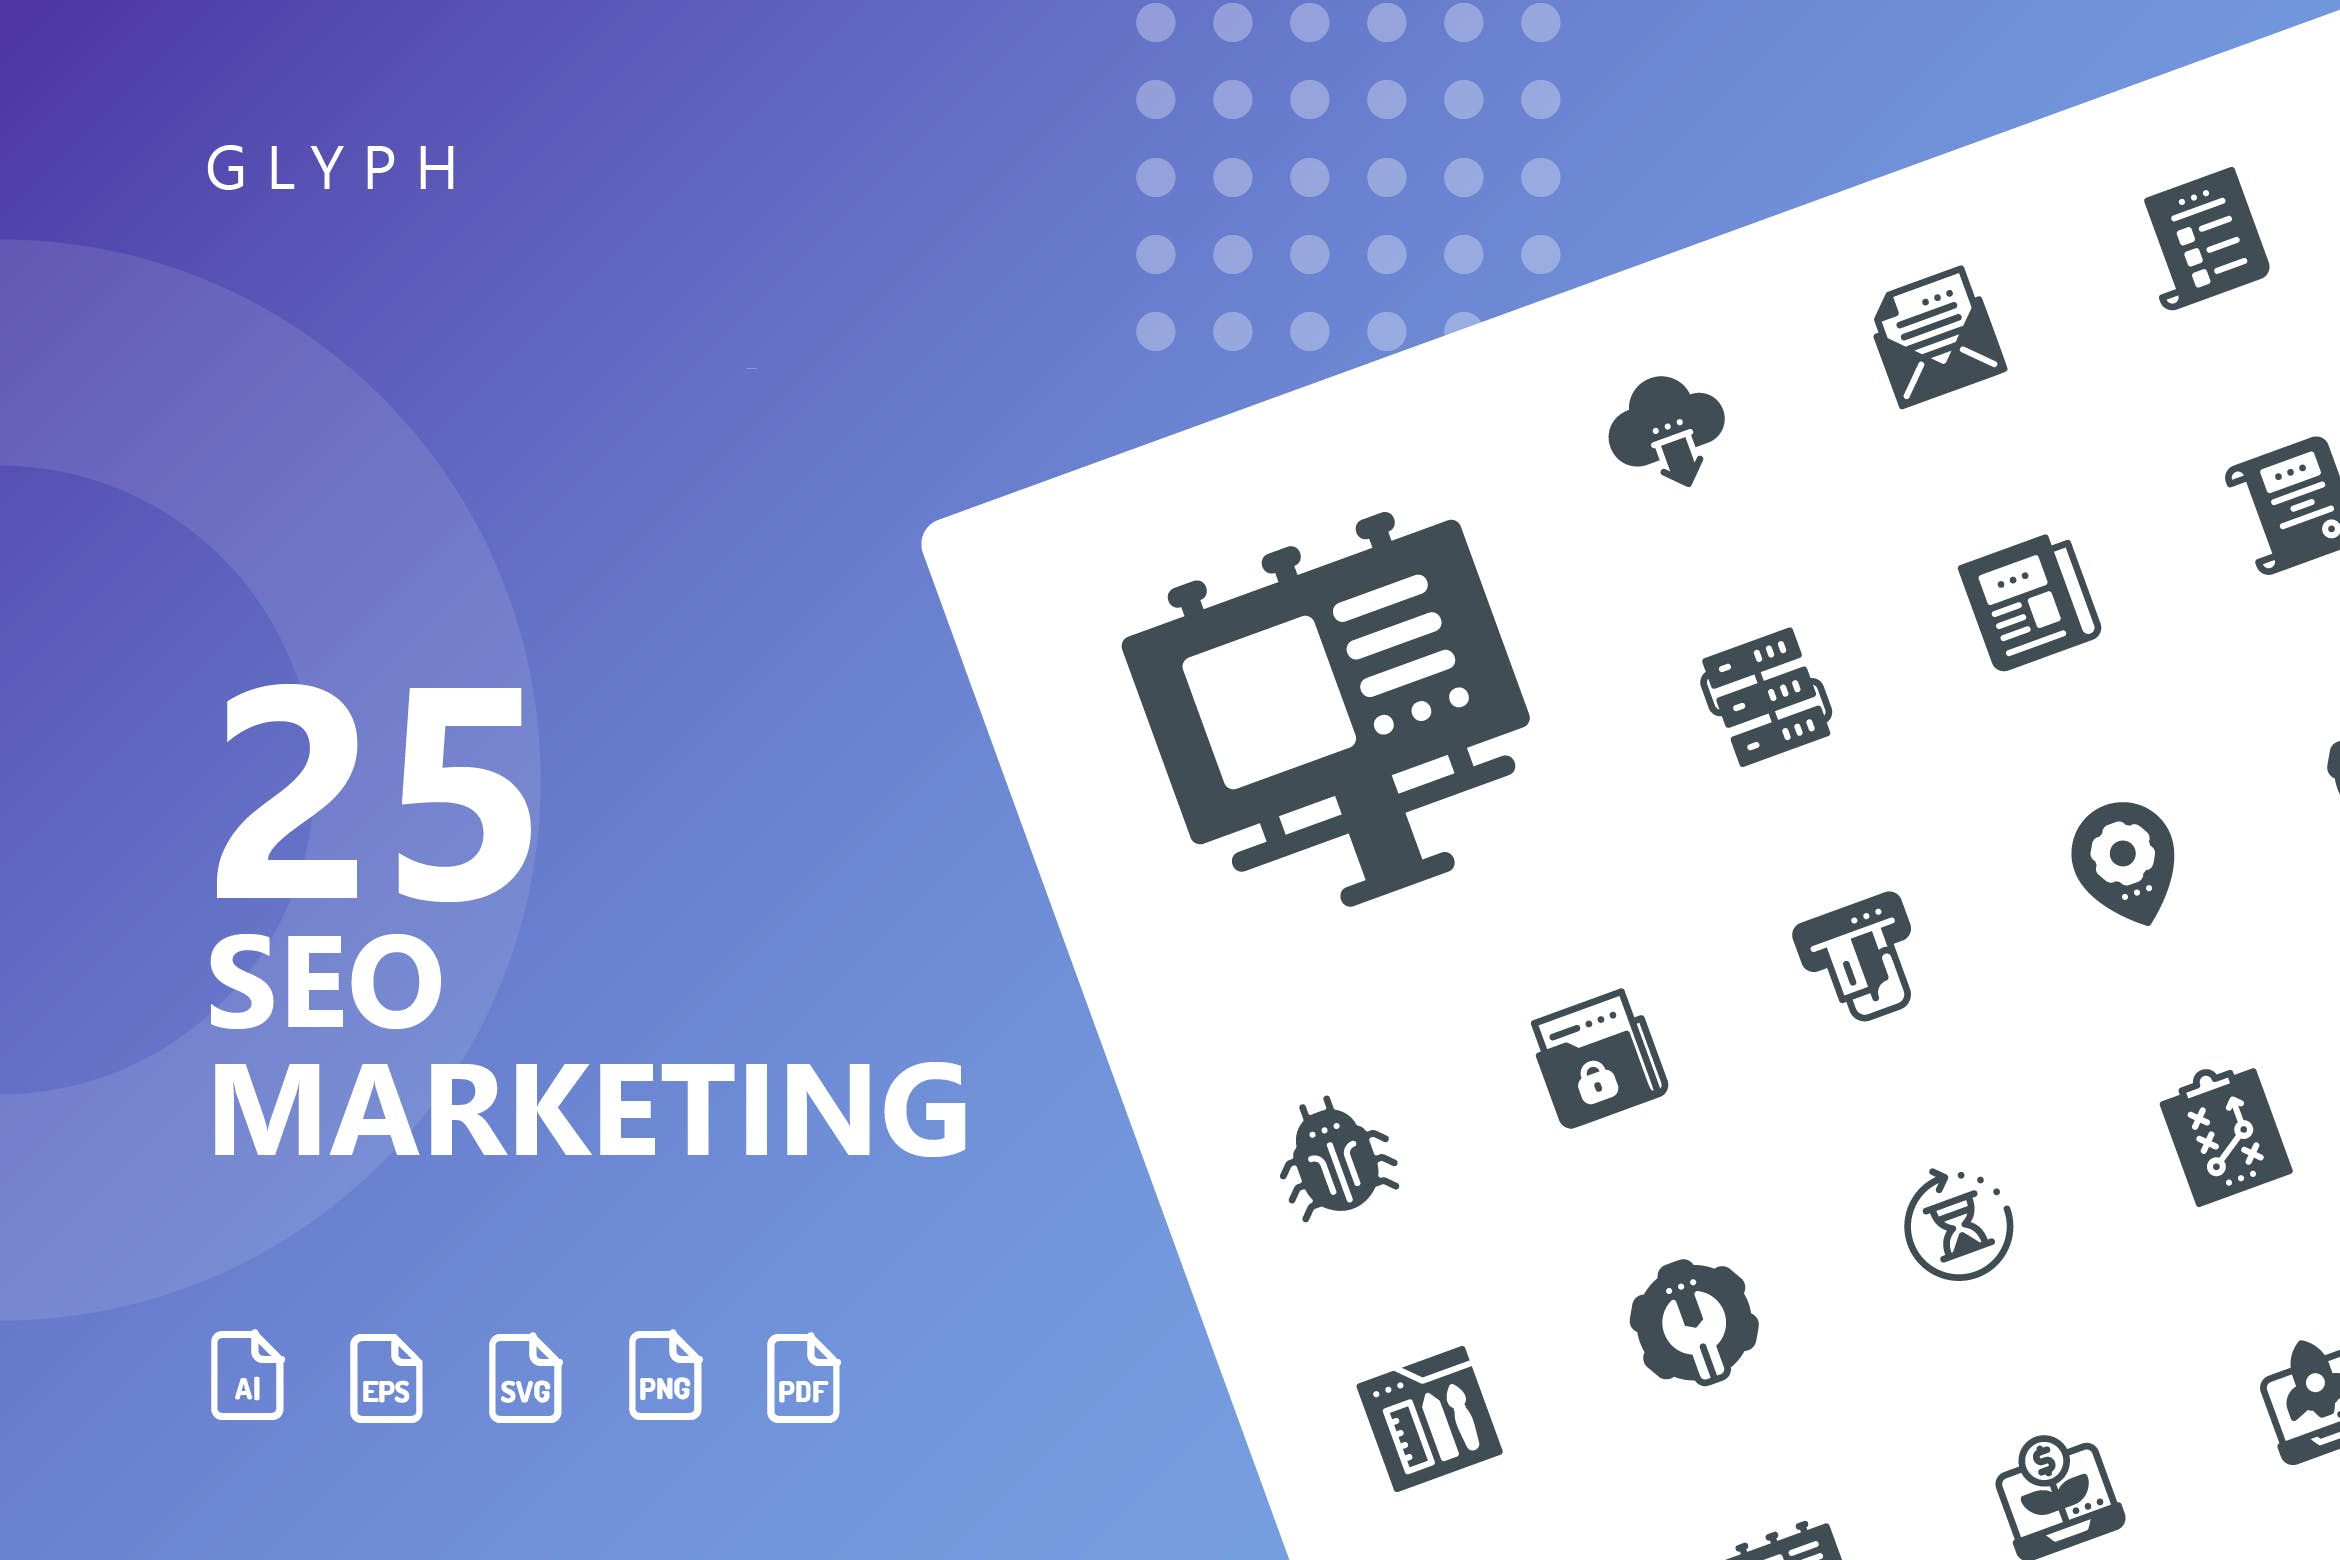 25枚SEO搜索引擎优化营销矢量字体蚂蚁素材精选图标v1 SEO Marketing Glyph Icons插图